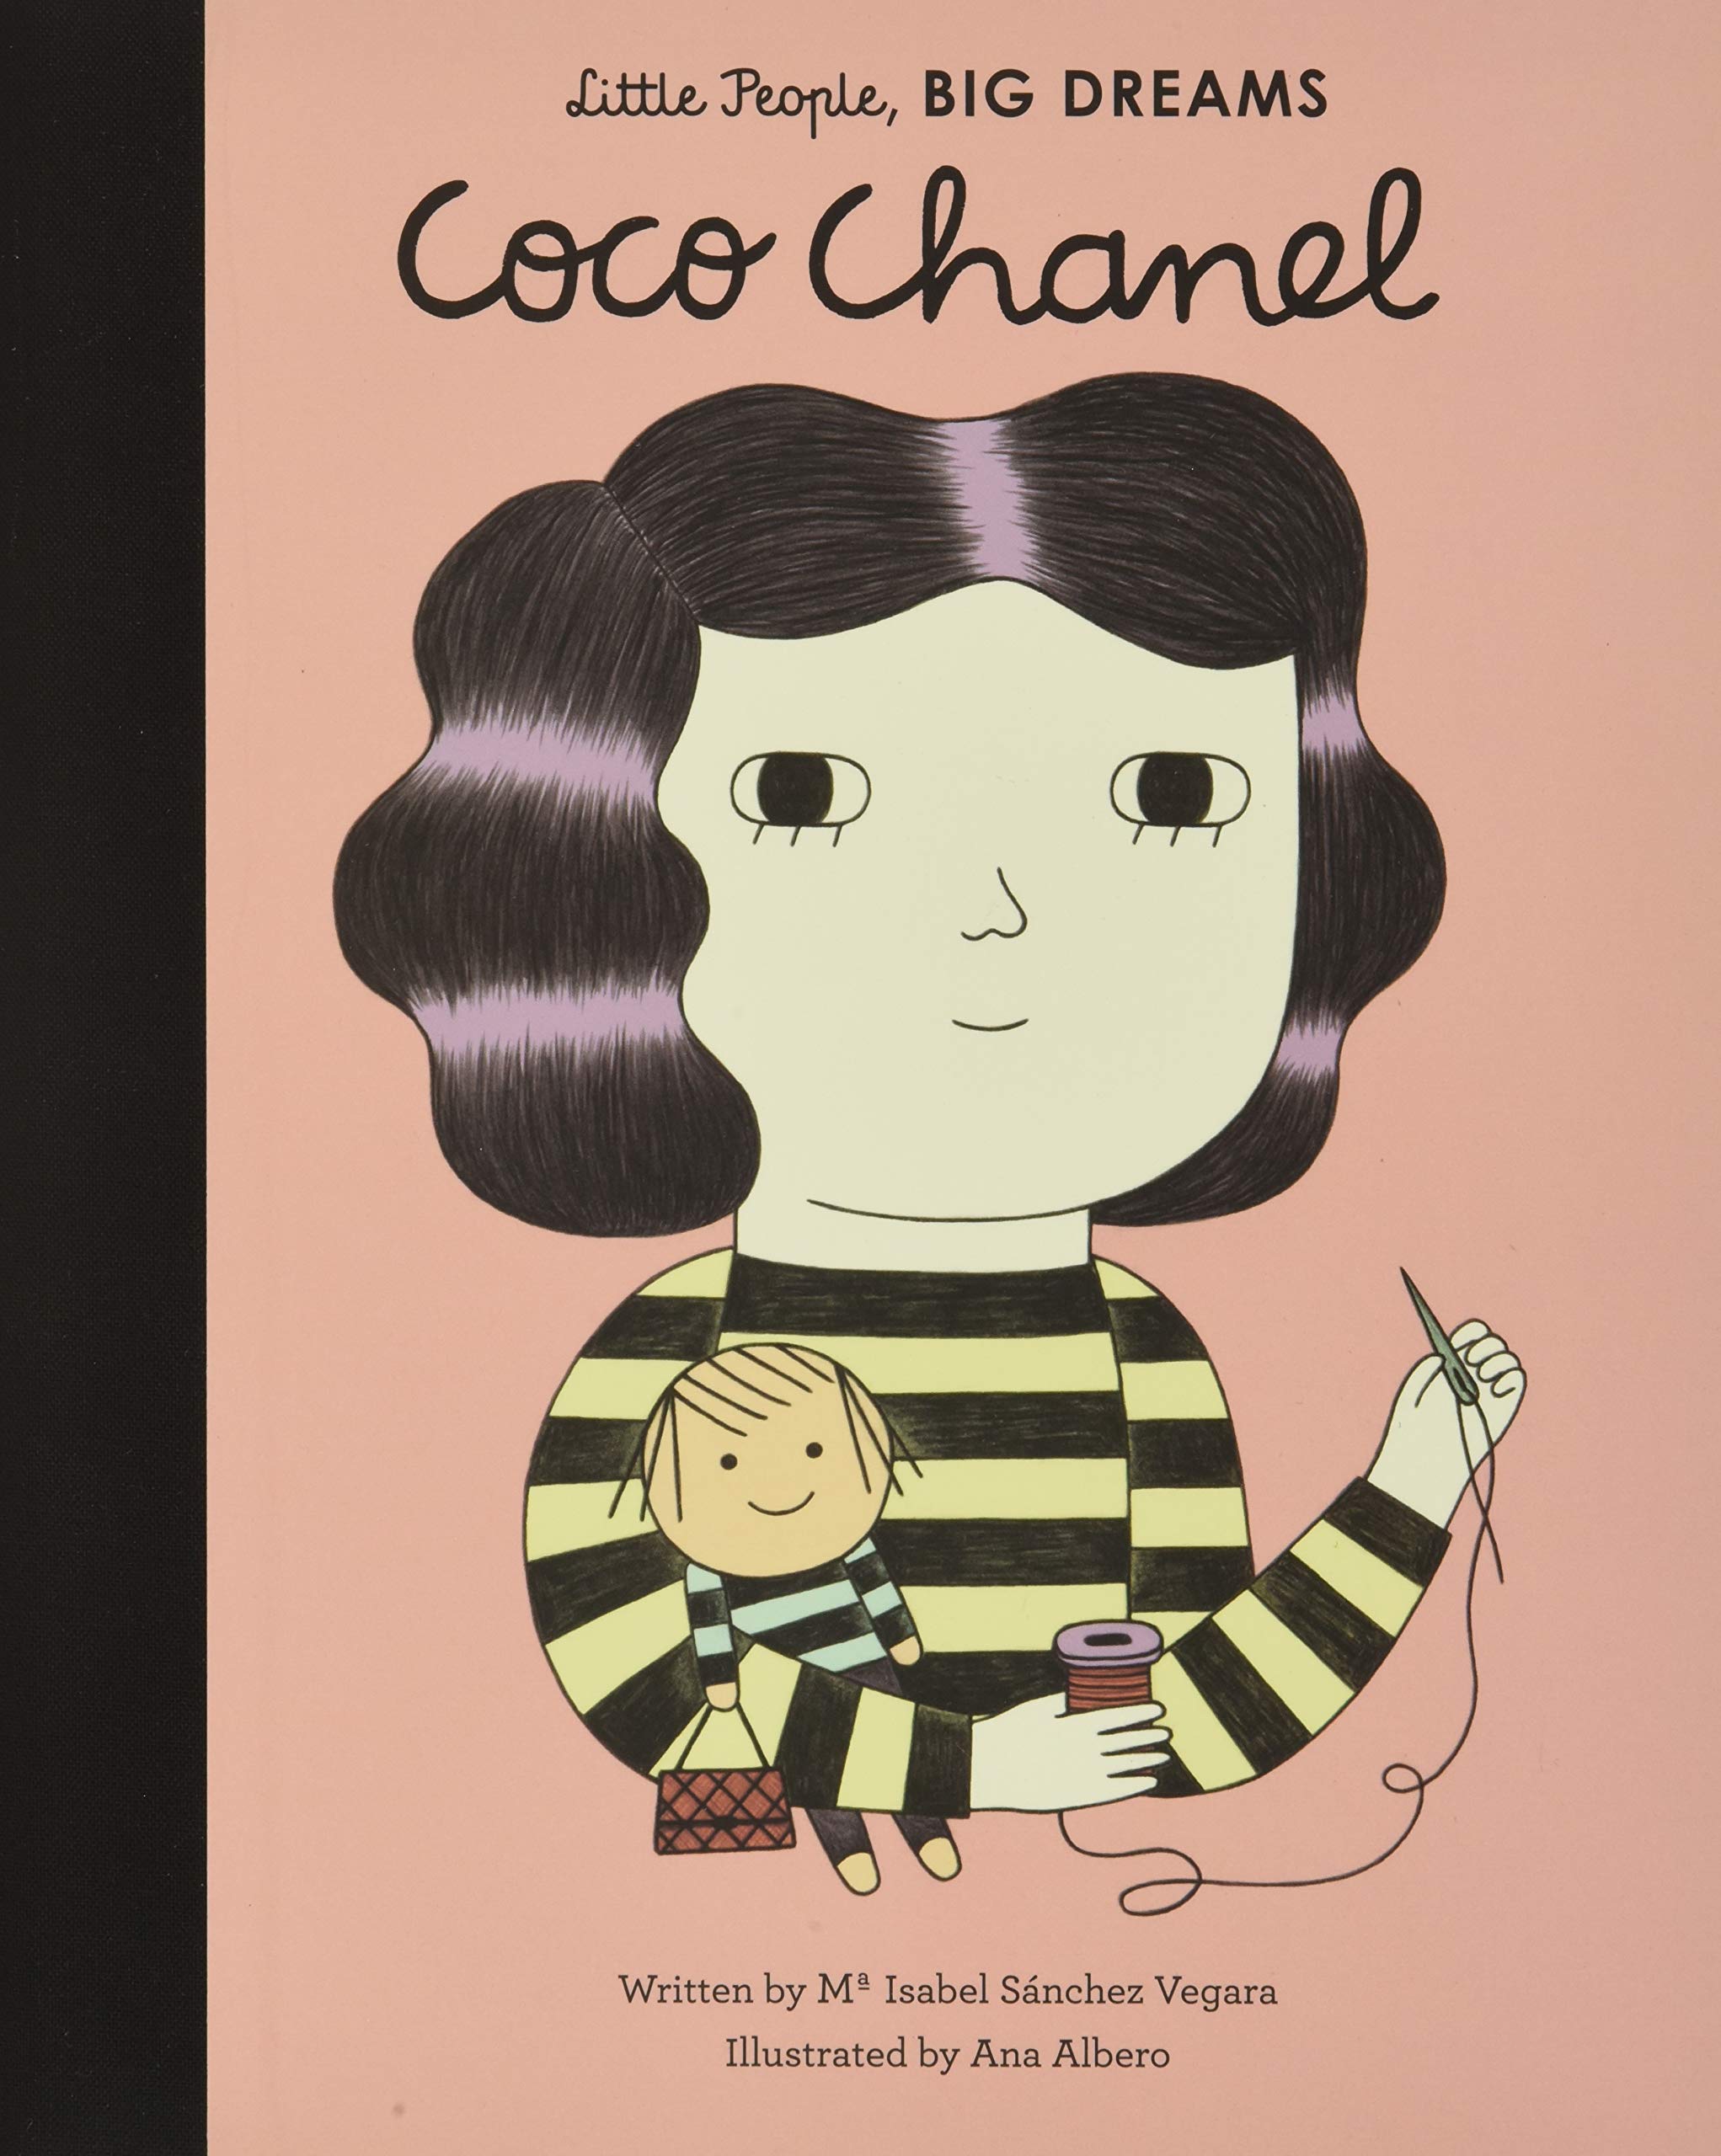 Little People, Big Dreams - Coco Chanel